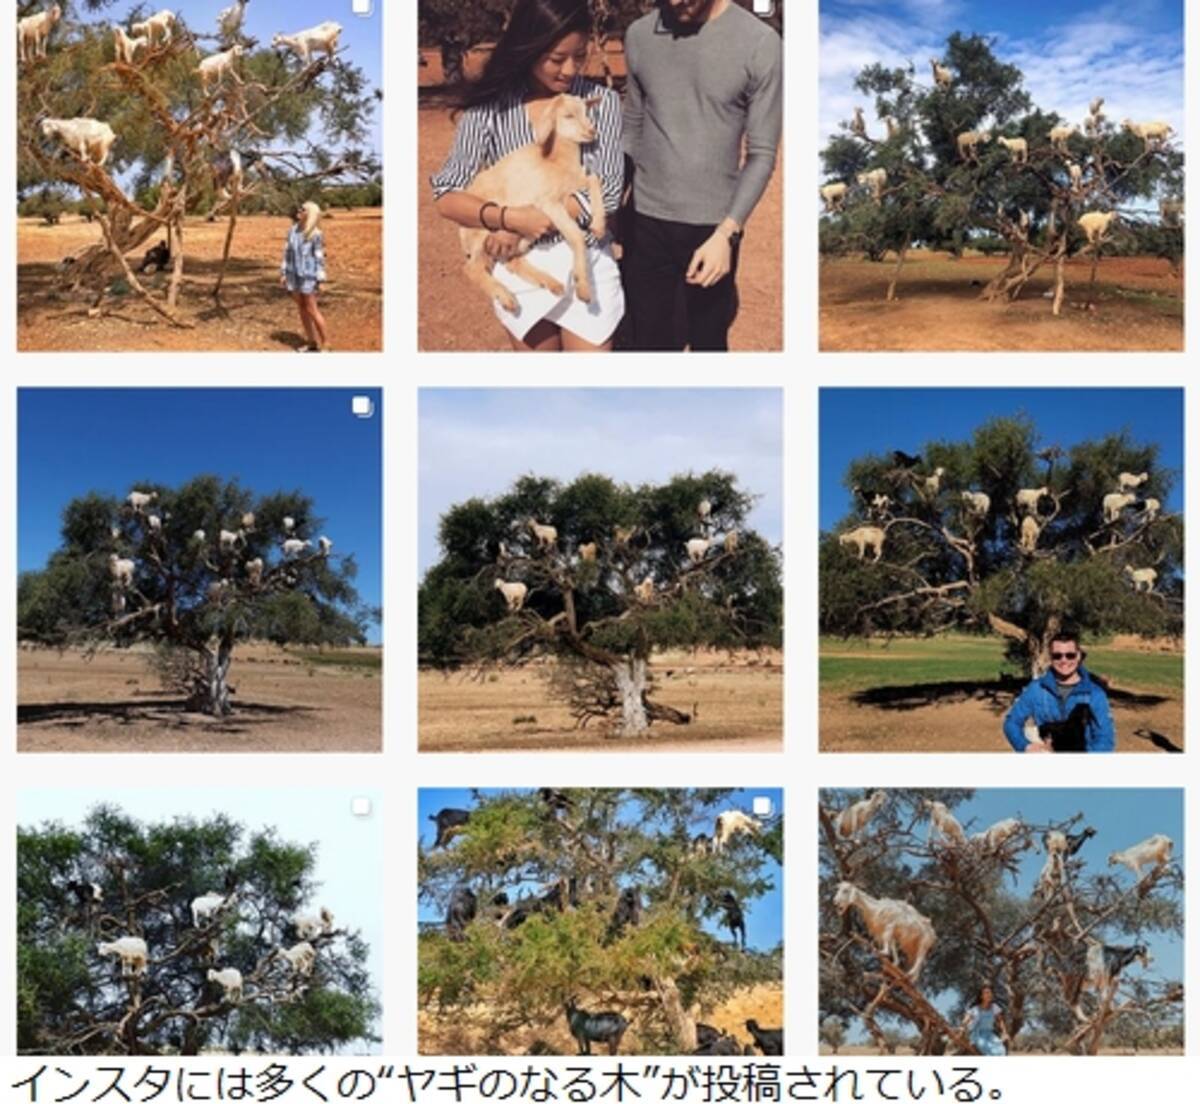 名物 ヤギのなる木 写真用のフェイク問題浮上 19年4月25日 エキサイトニュース